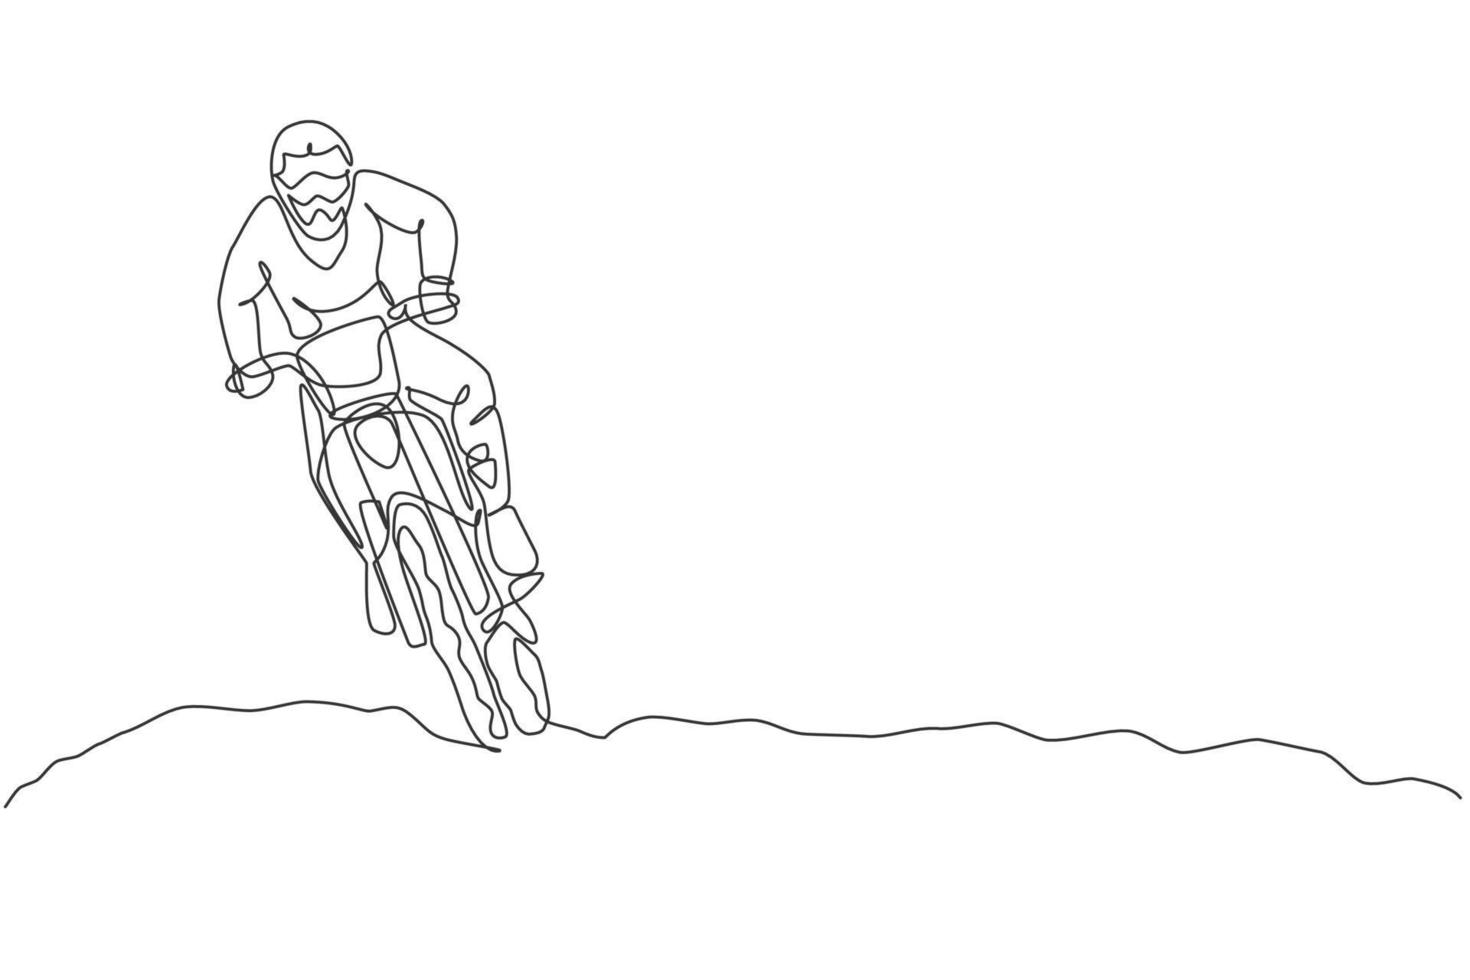 dibujo de una sola línea continua de un joven motocross conduce la bicicleta tan rápido en la pista. Ilustración de vector de concepto de carrera de deporte extremo. diseño moderno de dibujo de una línea para medios de promoción de eventos de motocross